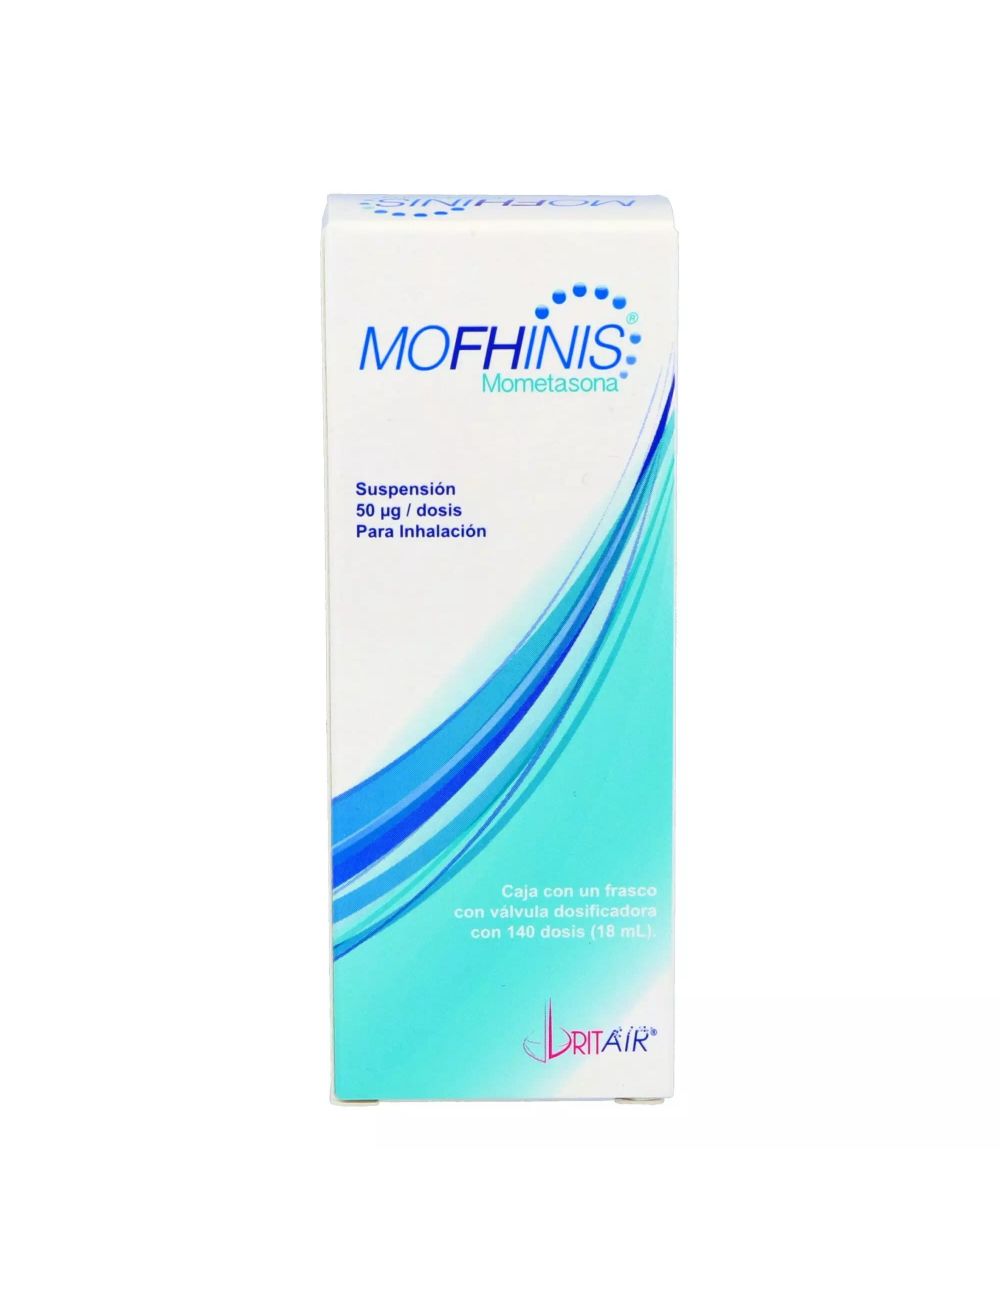 Mofhinis 50 mg Caja Con Frasco Con Válvula Dosificadora Con 18 mL